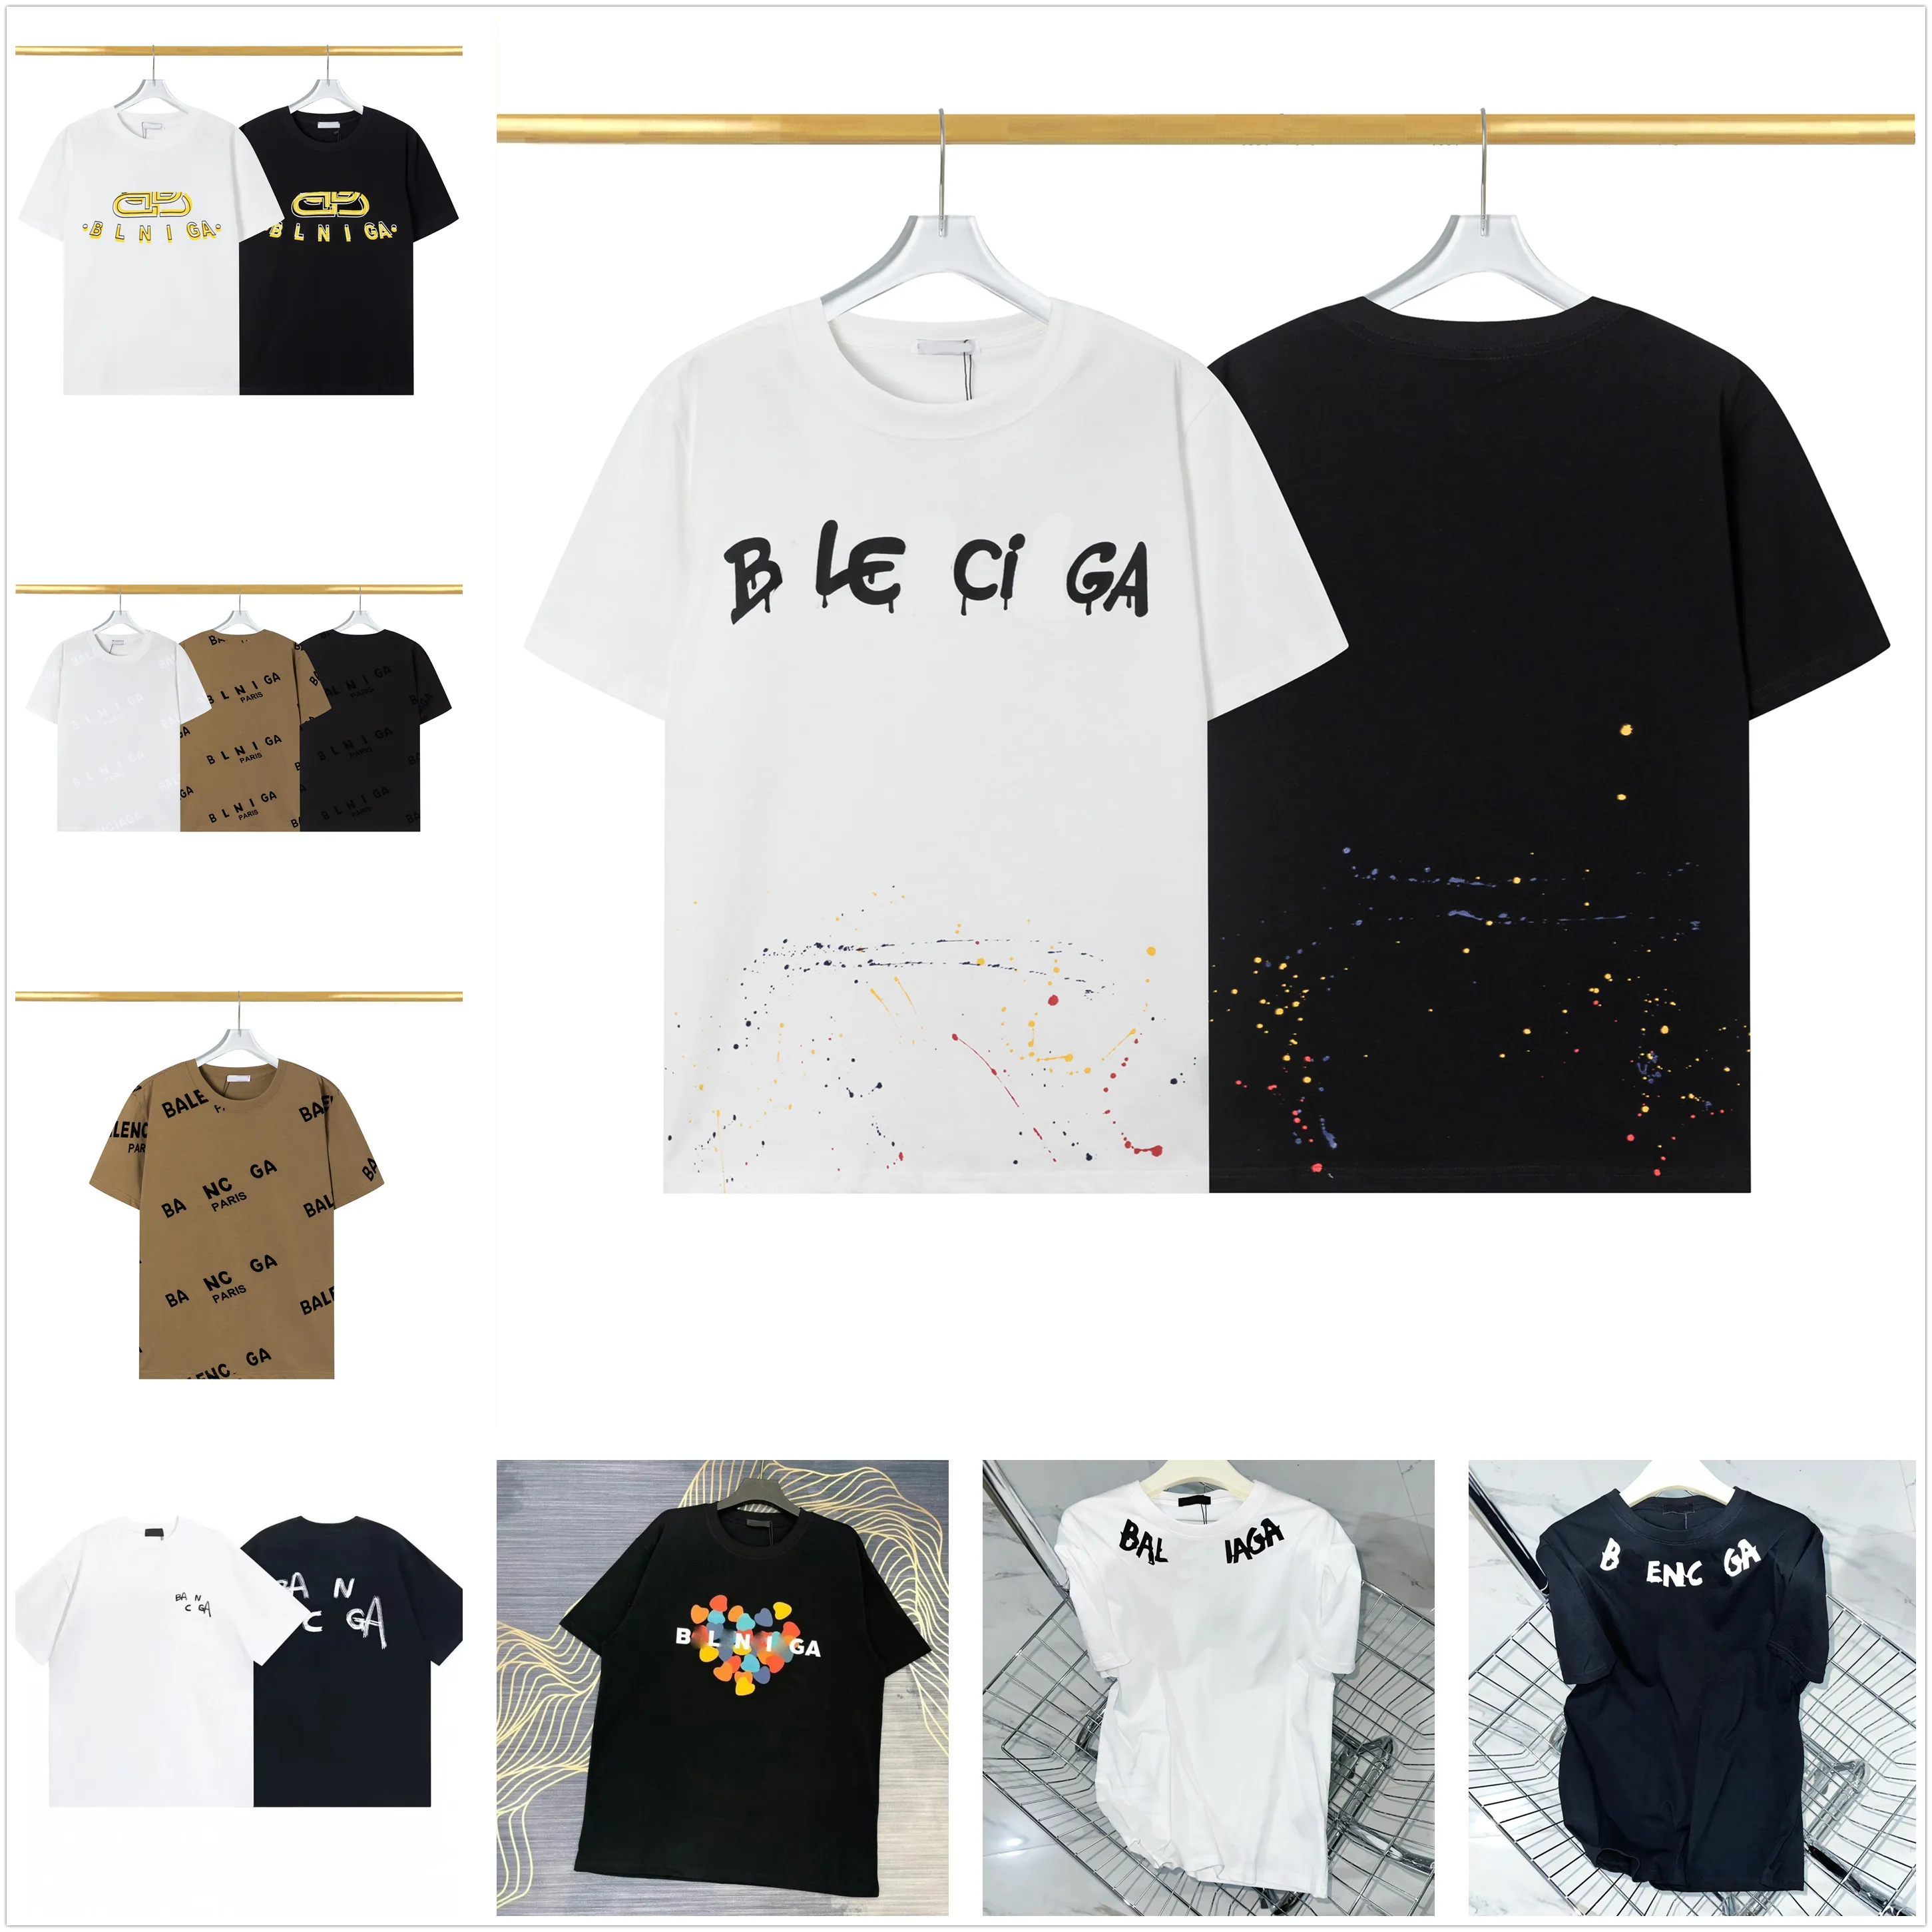 Nueva camiseta para hombre, diseñador, logotipo de letra dorada en el pecho, spray directo digital, moda para hombres y mujeres con la misma sudadera extragrande de manga corta, jersey de algodón 3xl